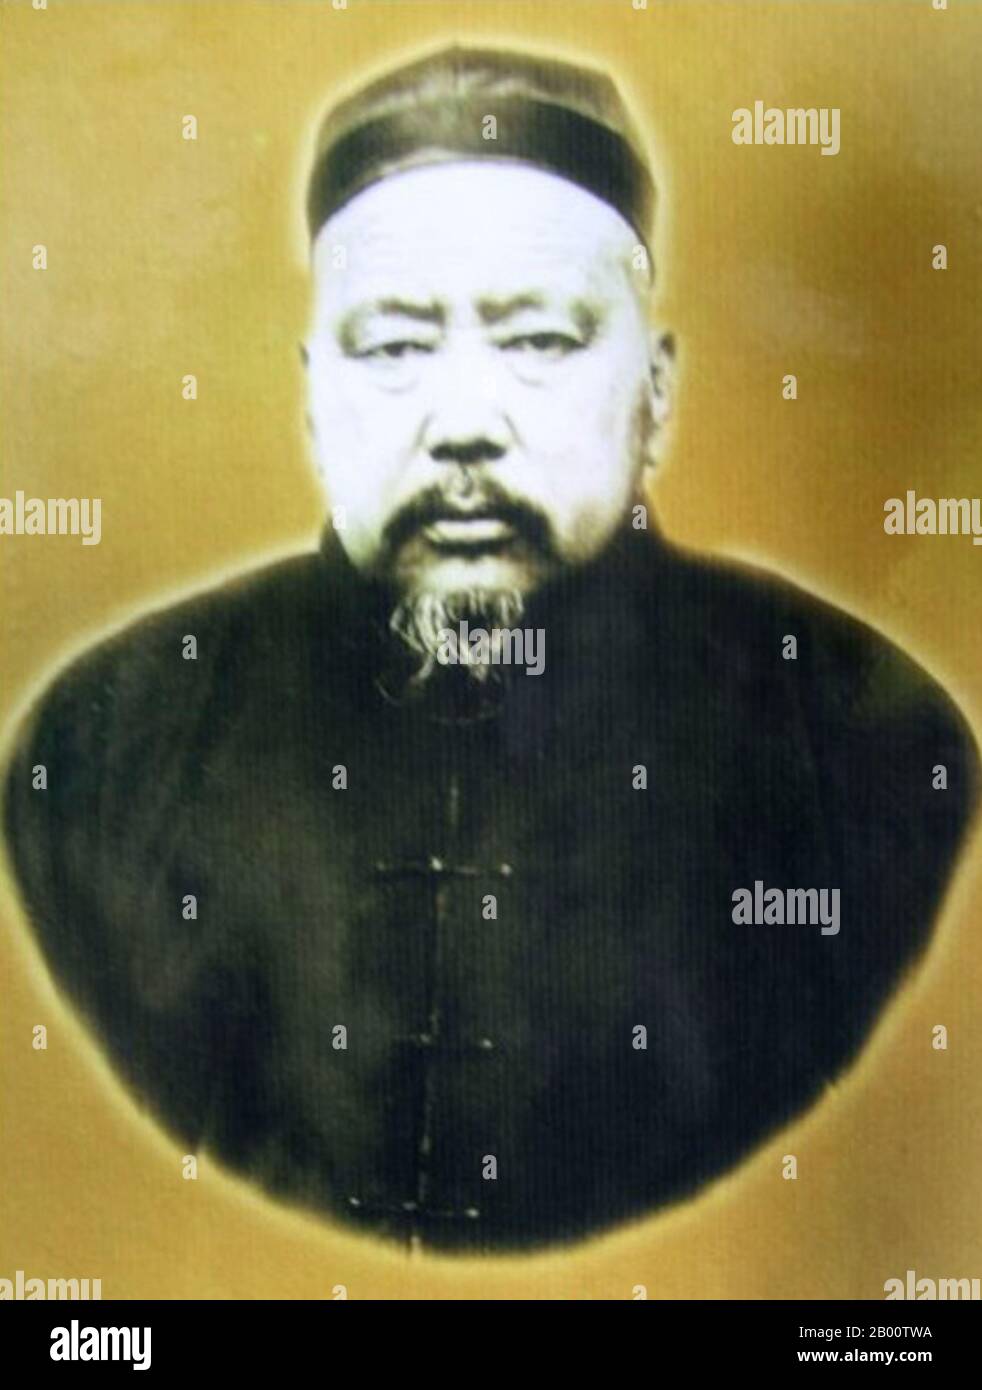 China: Chinesischer muslimischer Kriegsherr General Ma Qi (1869-1931), Herrscher von Qinghai 1915-1931. MA Qi war ein Kriegsherr im China des frühen 20. Jahrhunderts. Als Muslim Hui wurde er 1869 in Daohe, heute Teil von Linxia, Gansu, China, geboren. Seit der späten Qing-Periode war er Oberbefehlshaber in der Region Qinghai-Gansu und Vater der Warlords der Familie Ma Buqing und Ma Bufang. Stockfoto